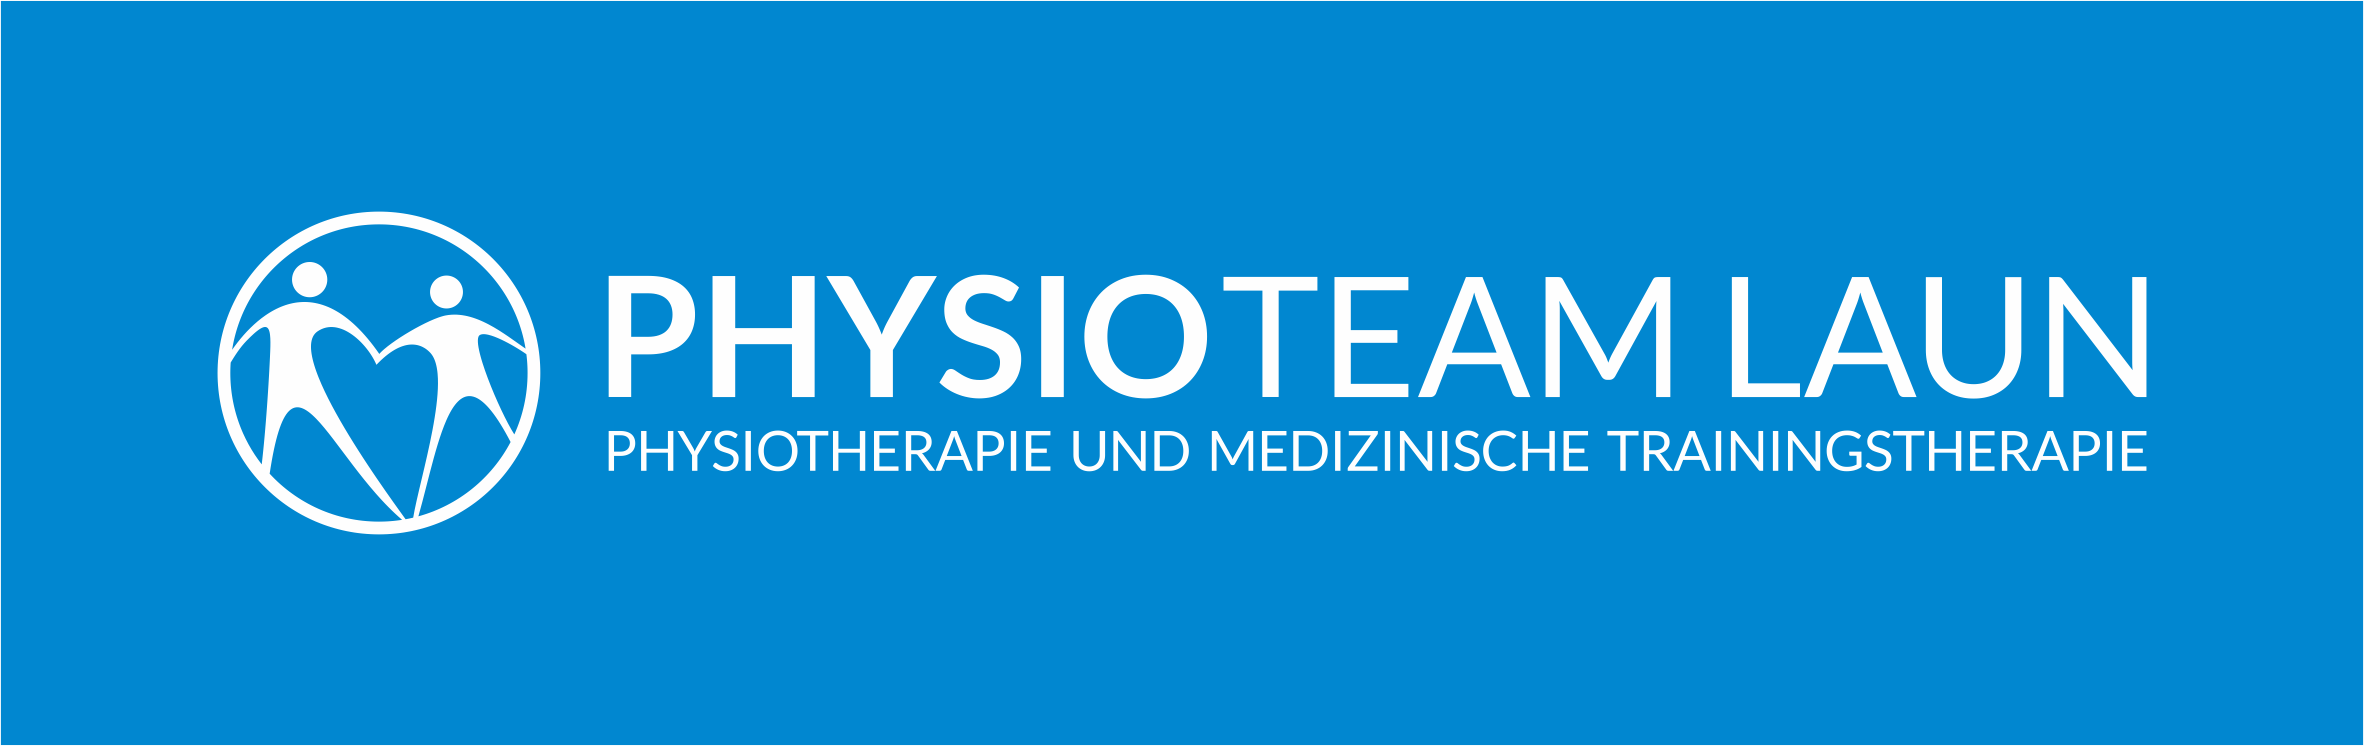 Bild 1 Physio Team Laun - Praxis für Physiotherapie & med. Trainingstherapie in Hamburg